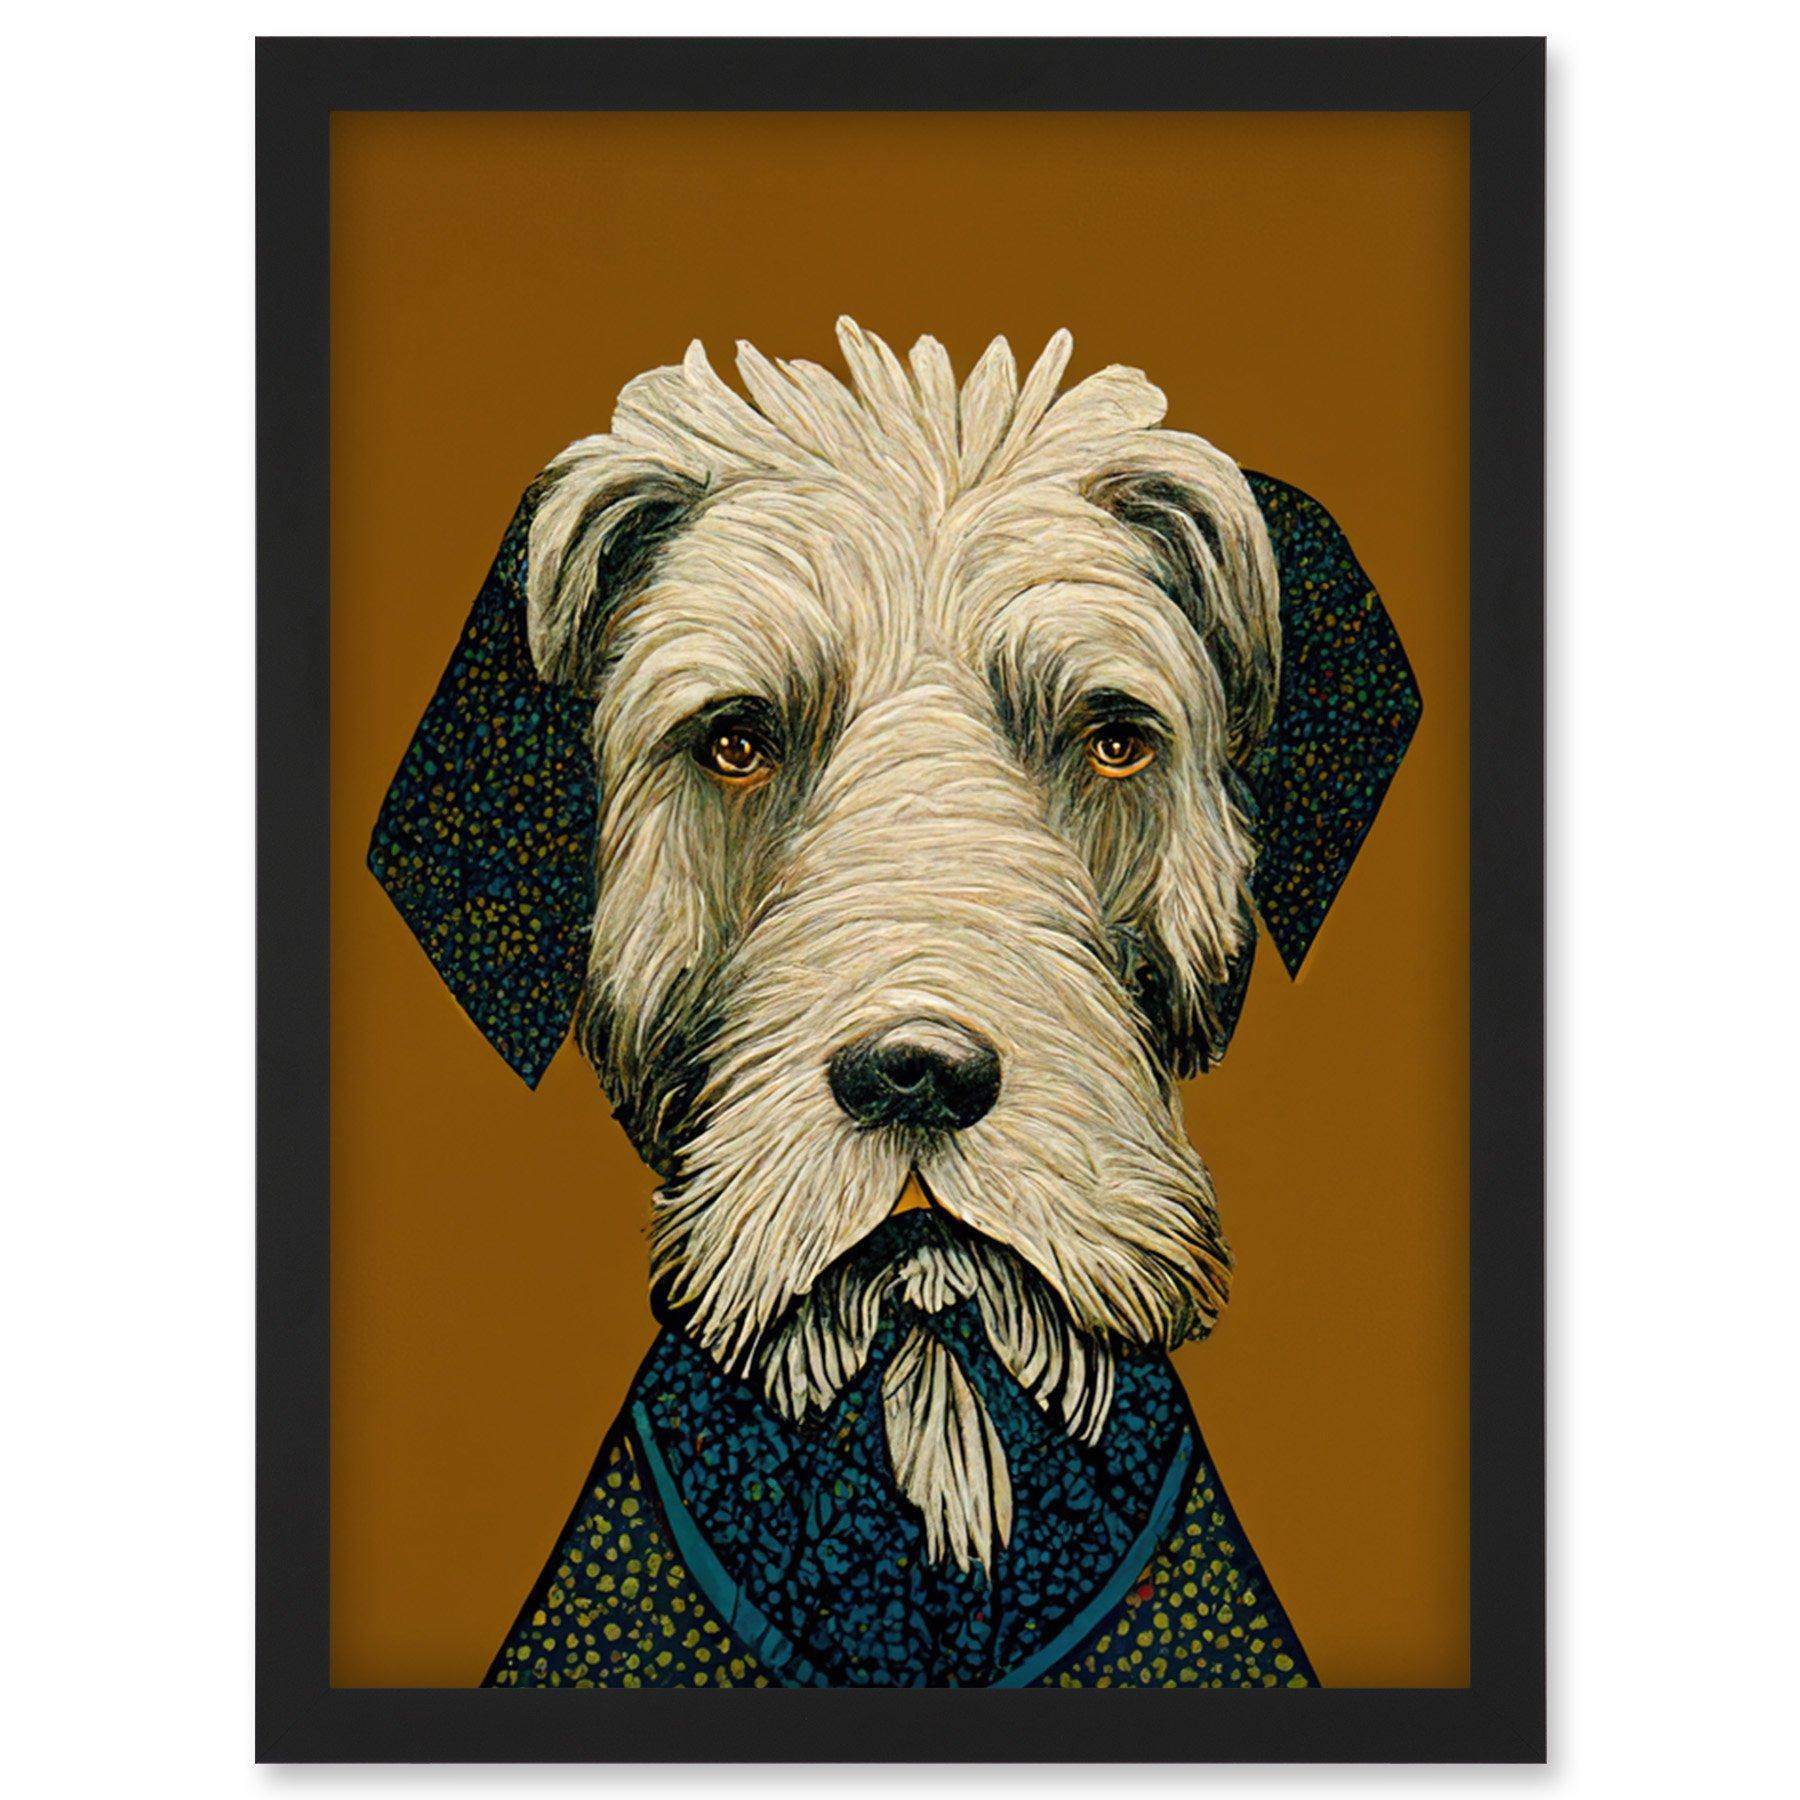 William Morris Style Terrier Dog Illustration Vintage Artwork Framed Wall Art Print A4 - image 1